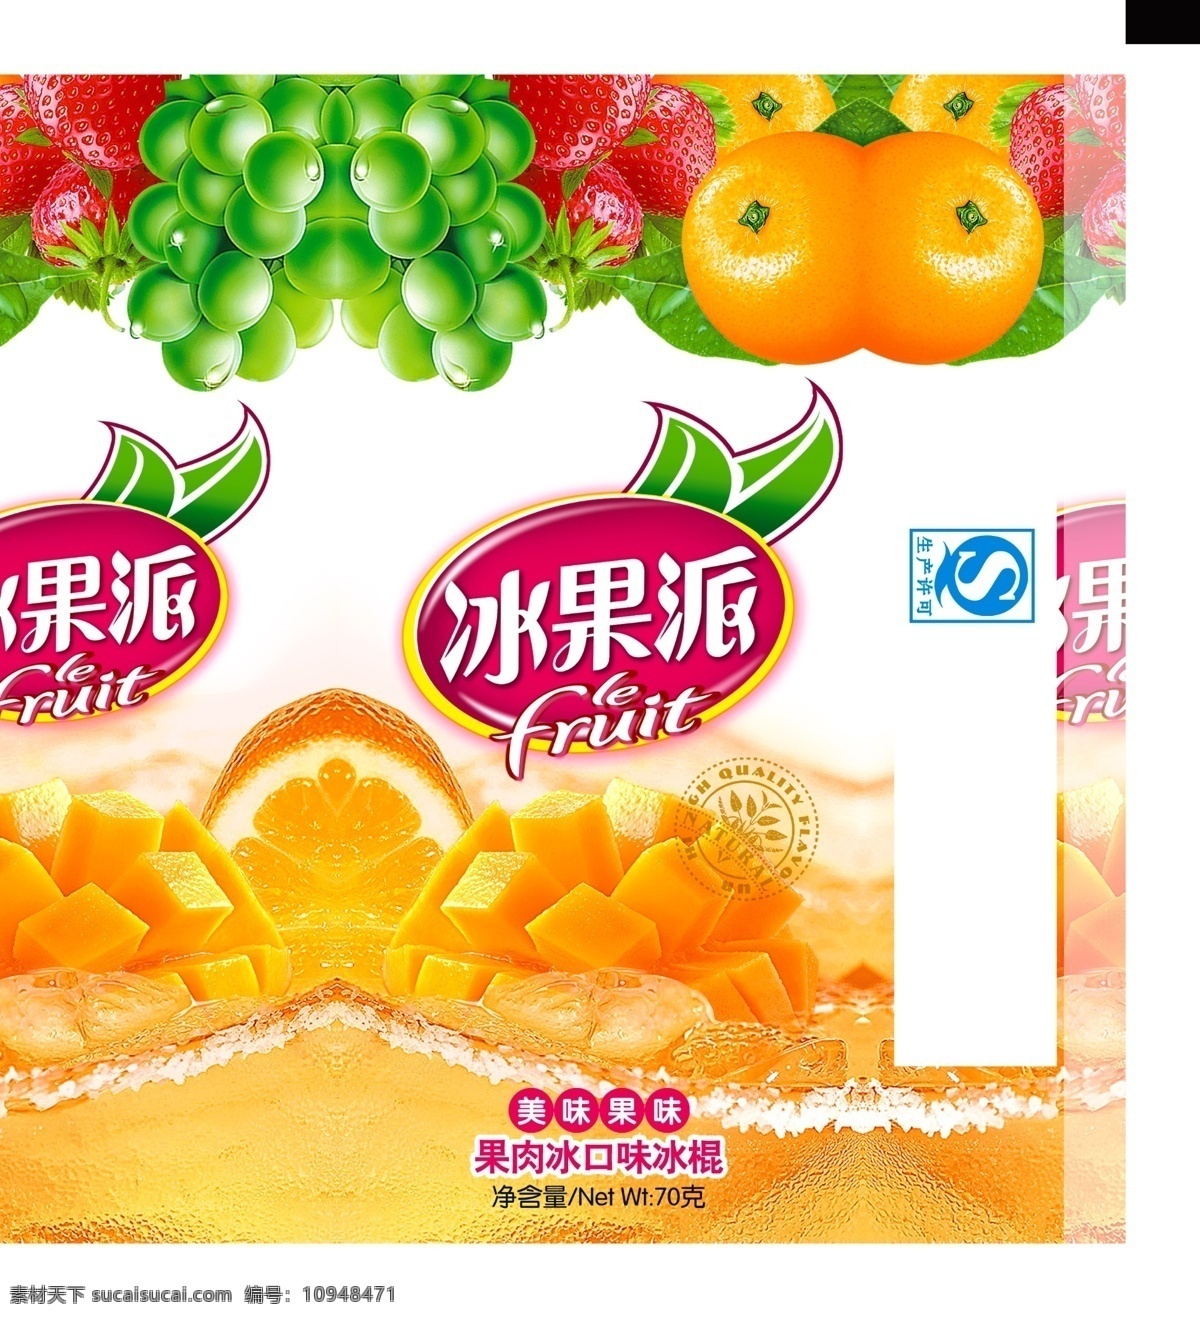 冰果 派 水果 饮品 宣传海报 冰果派 果汁 橙子 饮料 饮品店 饮品店招 新鲜水果 葡萄 共享图 分层 白色